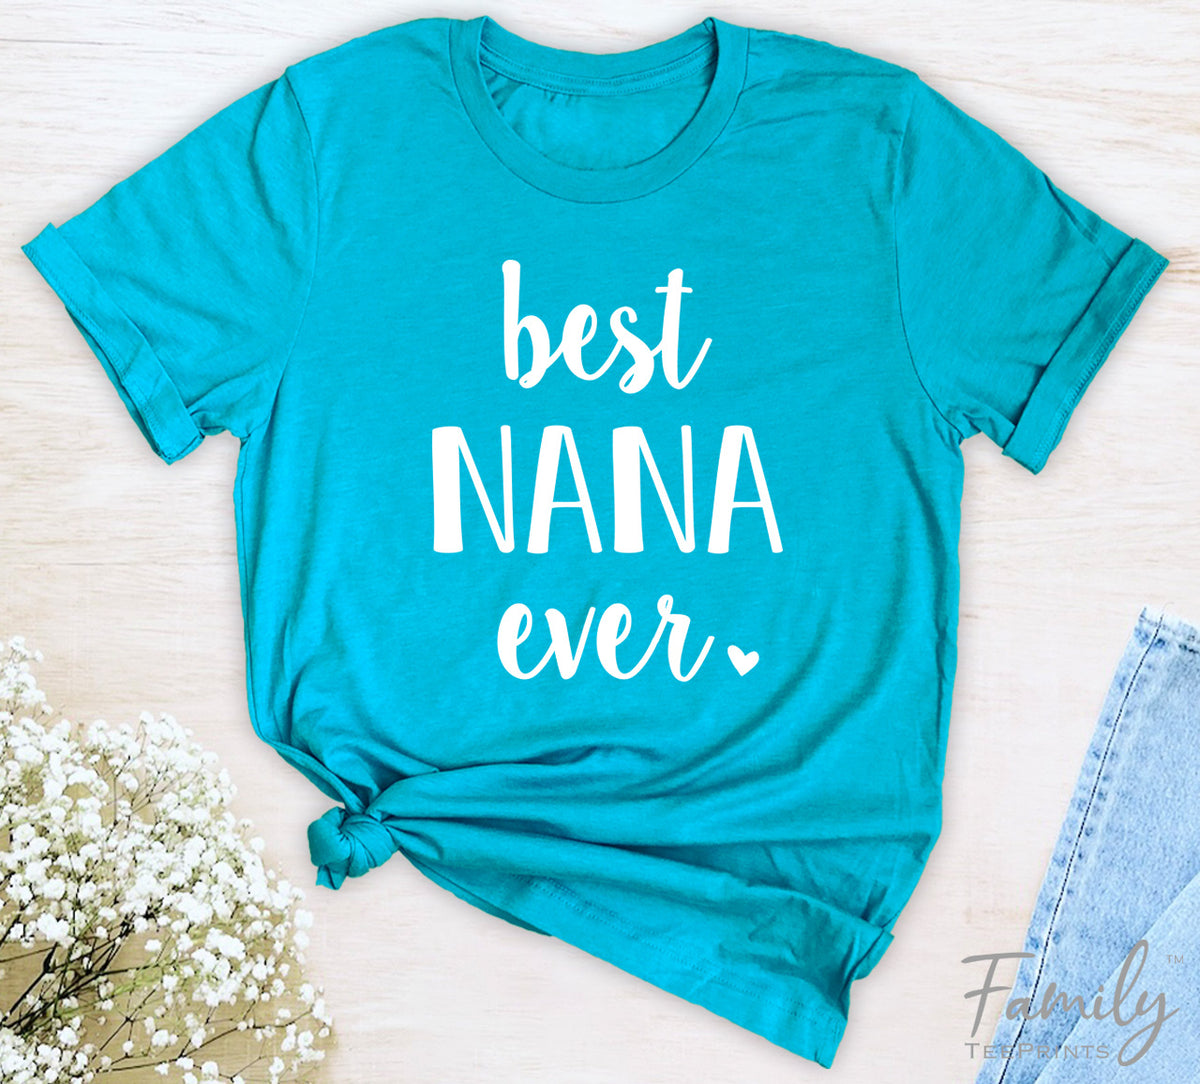 Best Nana Ever - Unisex T-shirt - Nana Shirt - Gift For New Nana - familyteeprints